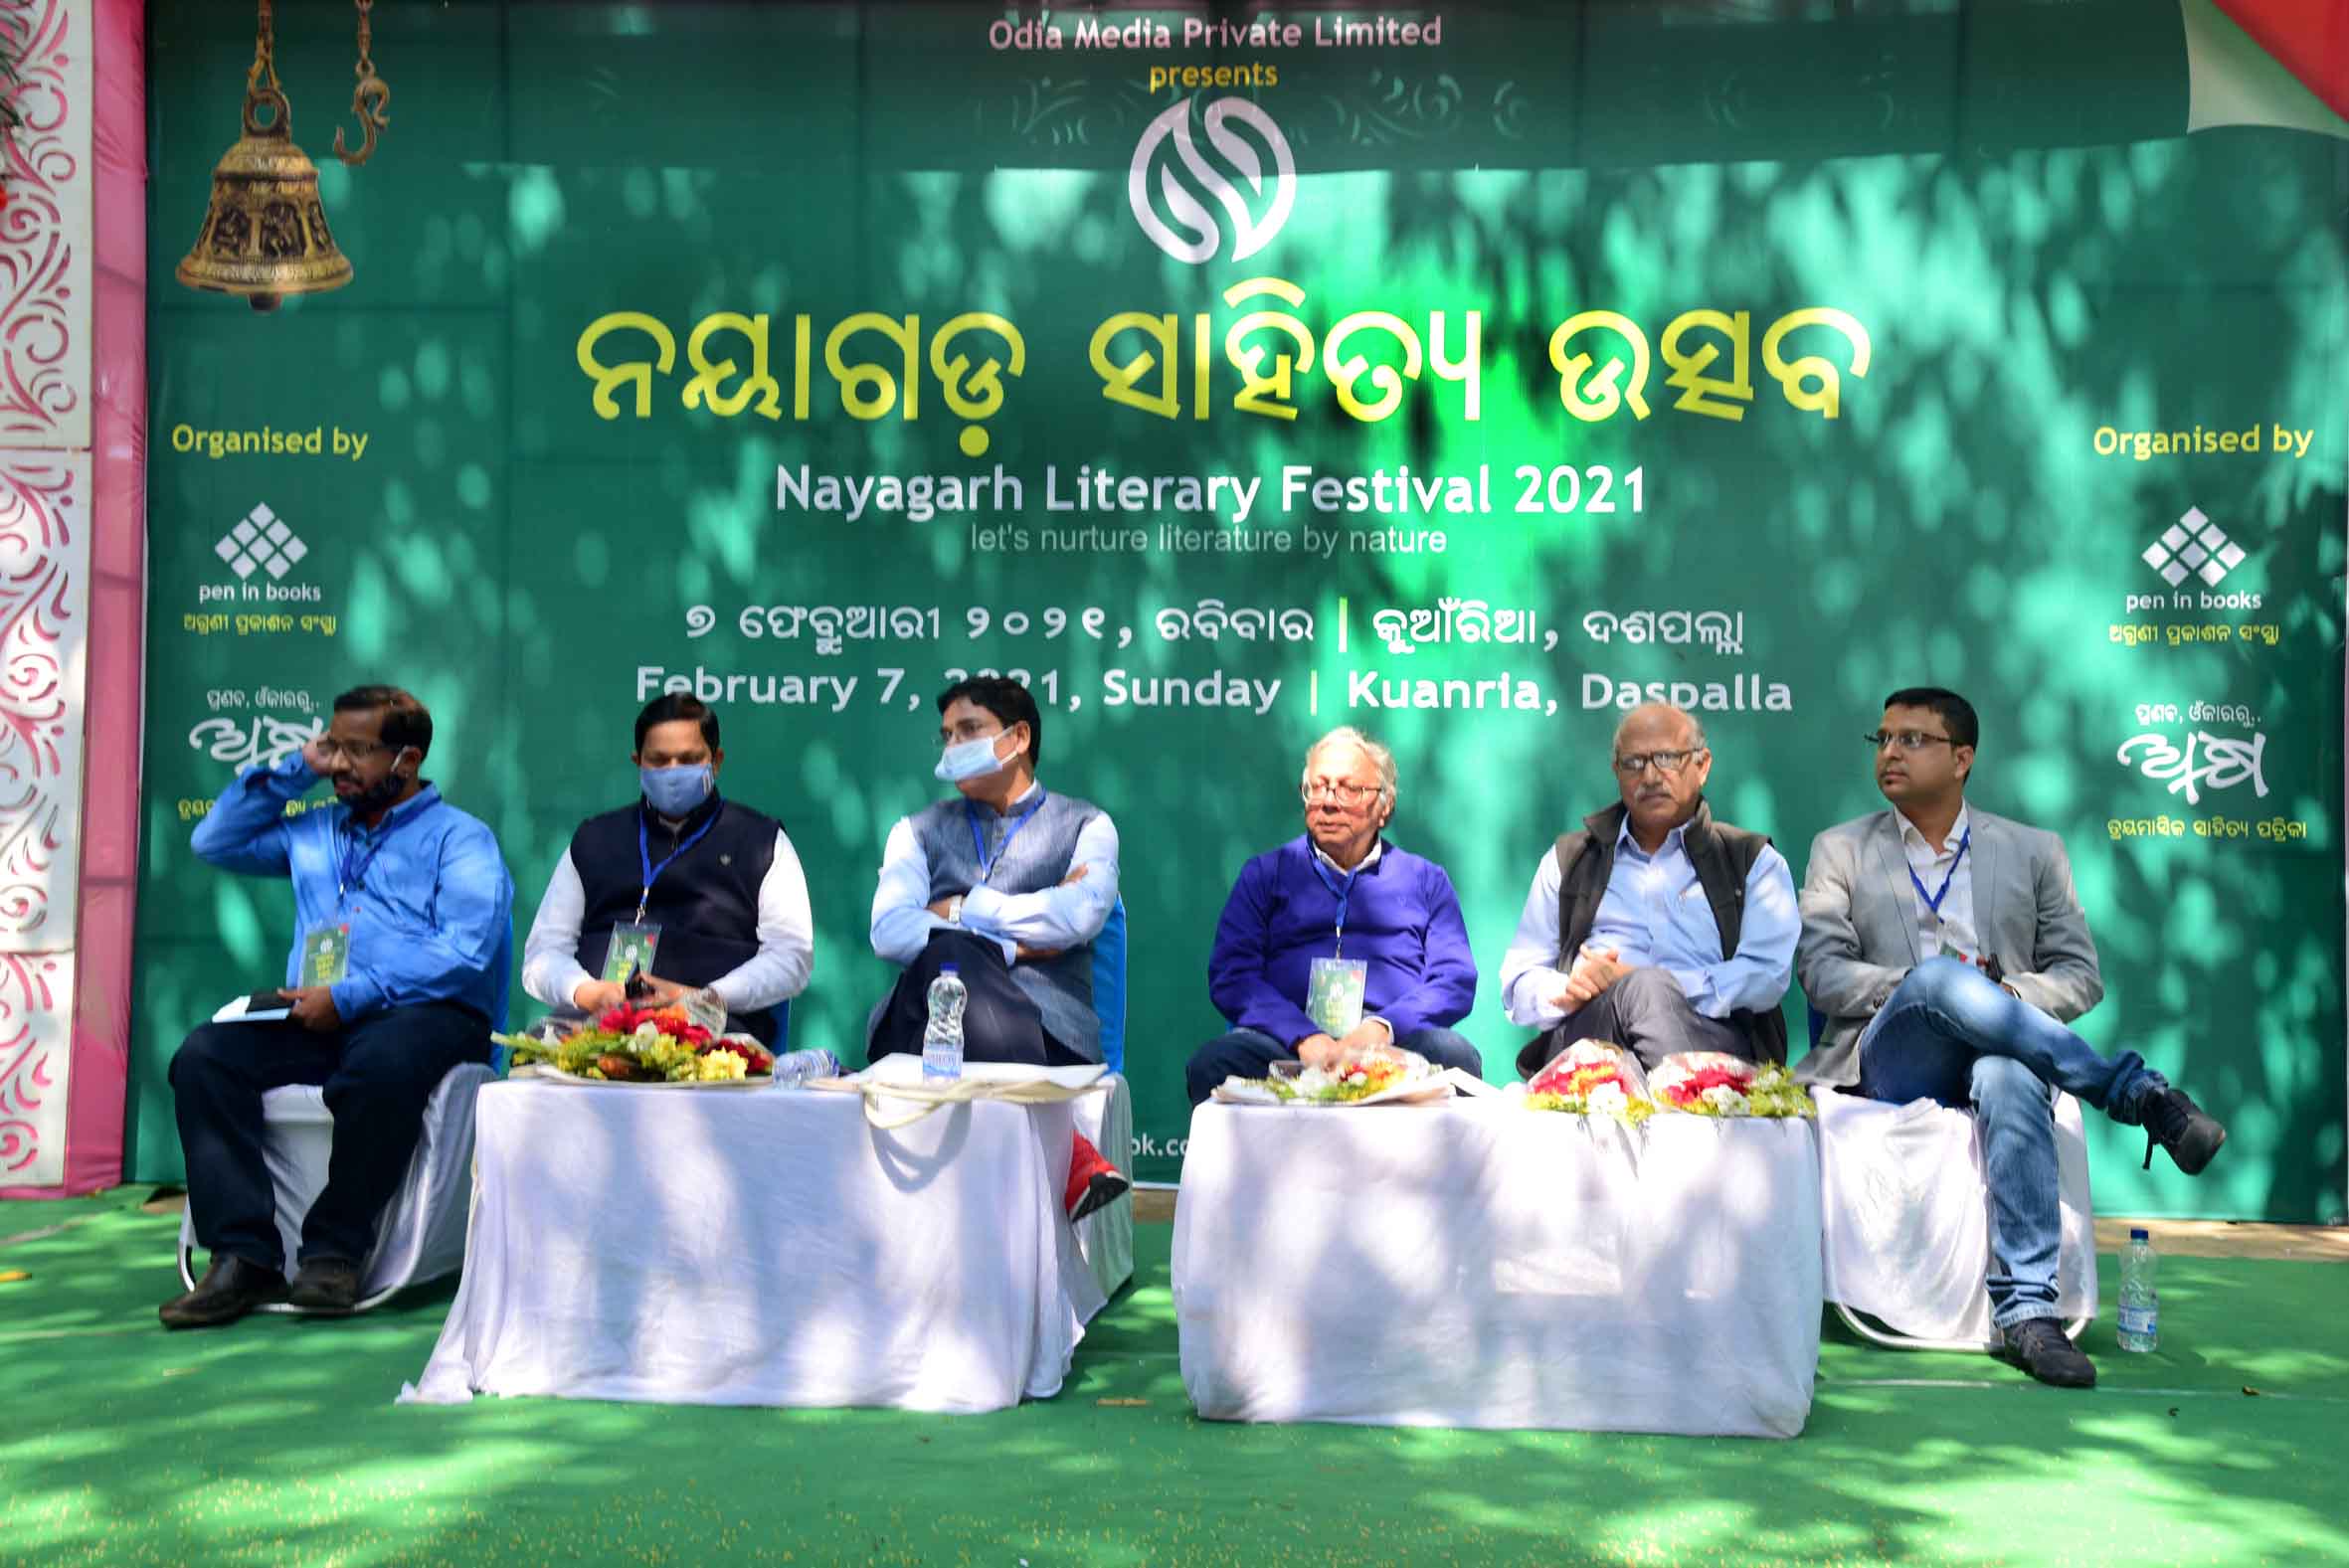 Nayagarh Literary Festival 2021 1